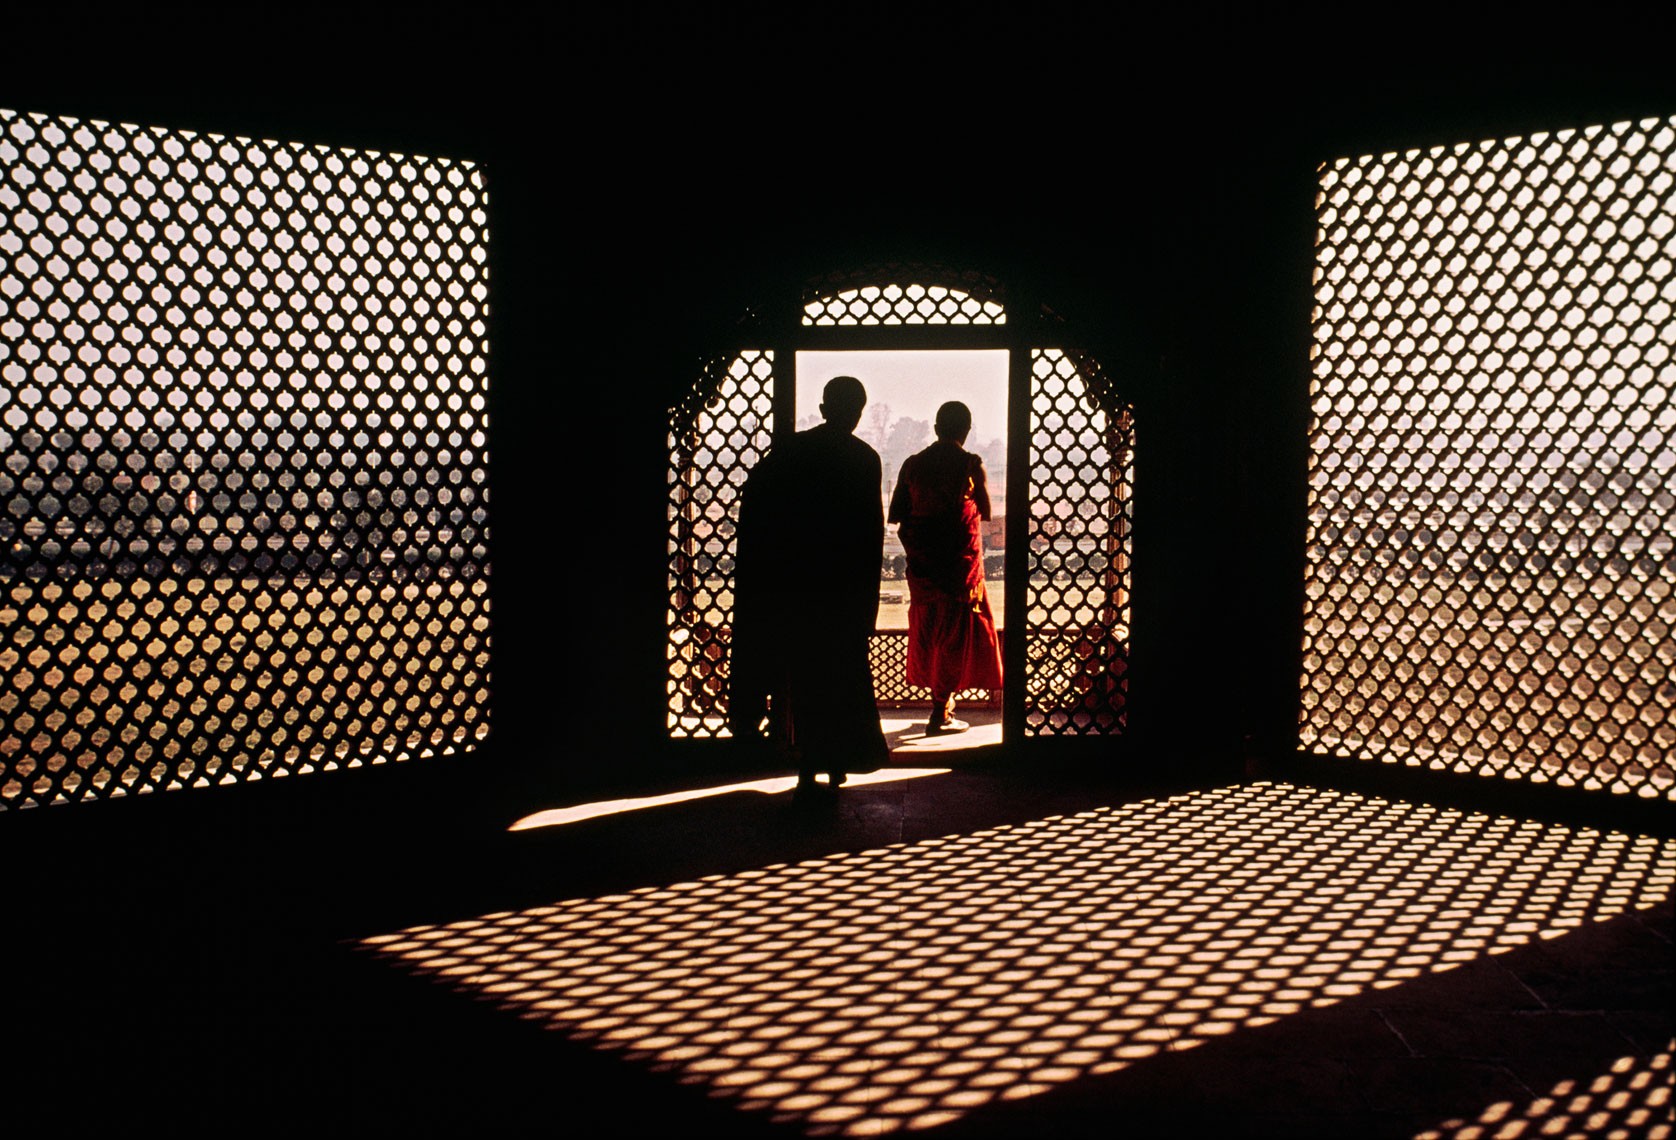 Лал-Кила (или Красный форт), Дели, Индия. Автор Стив Маккарри